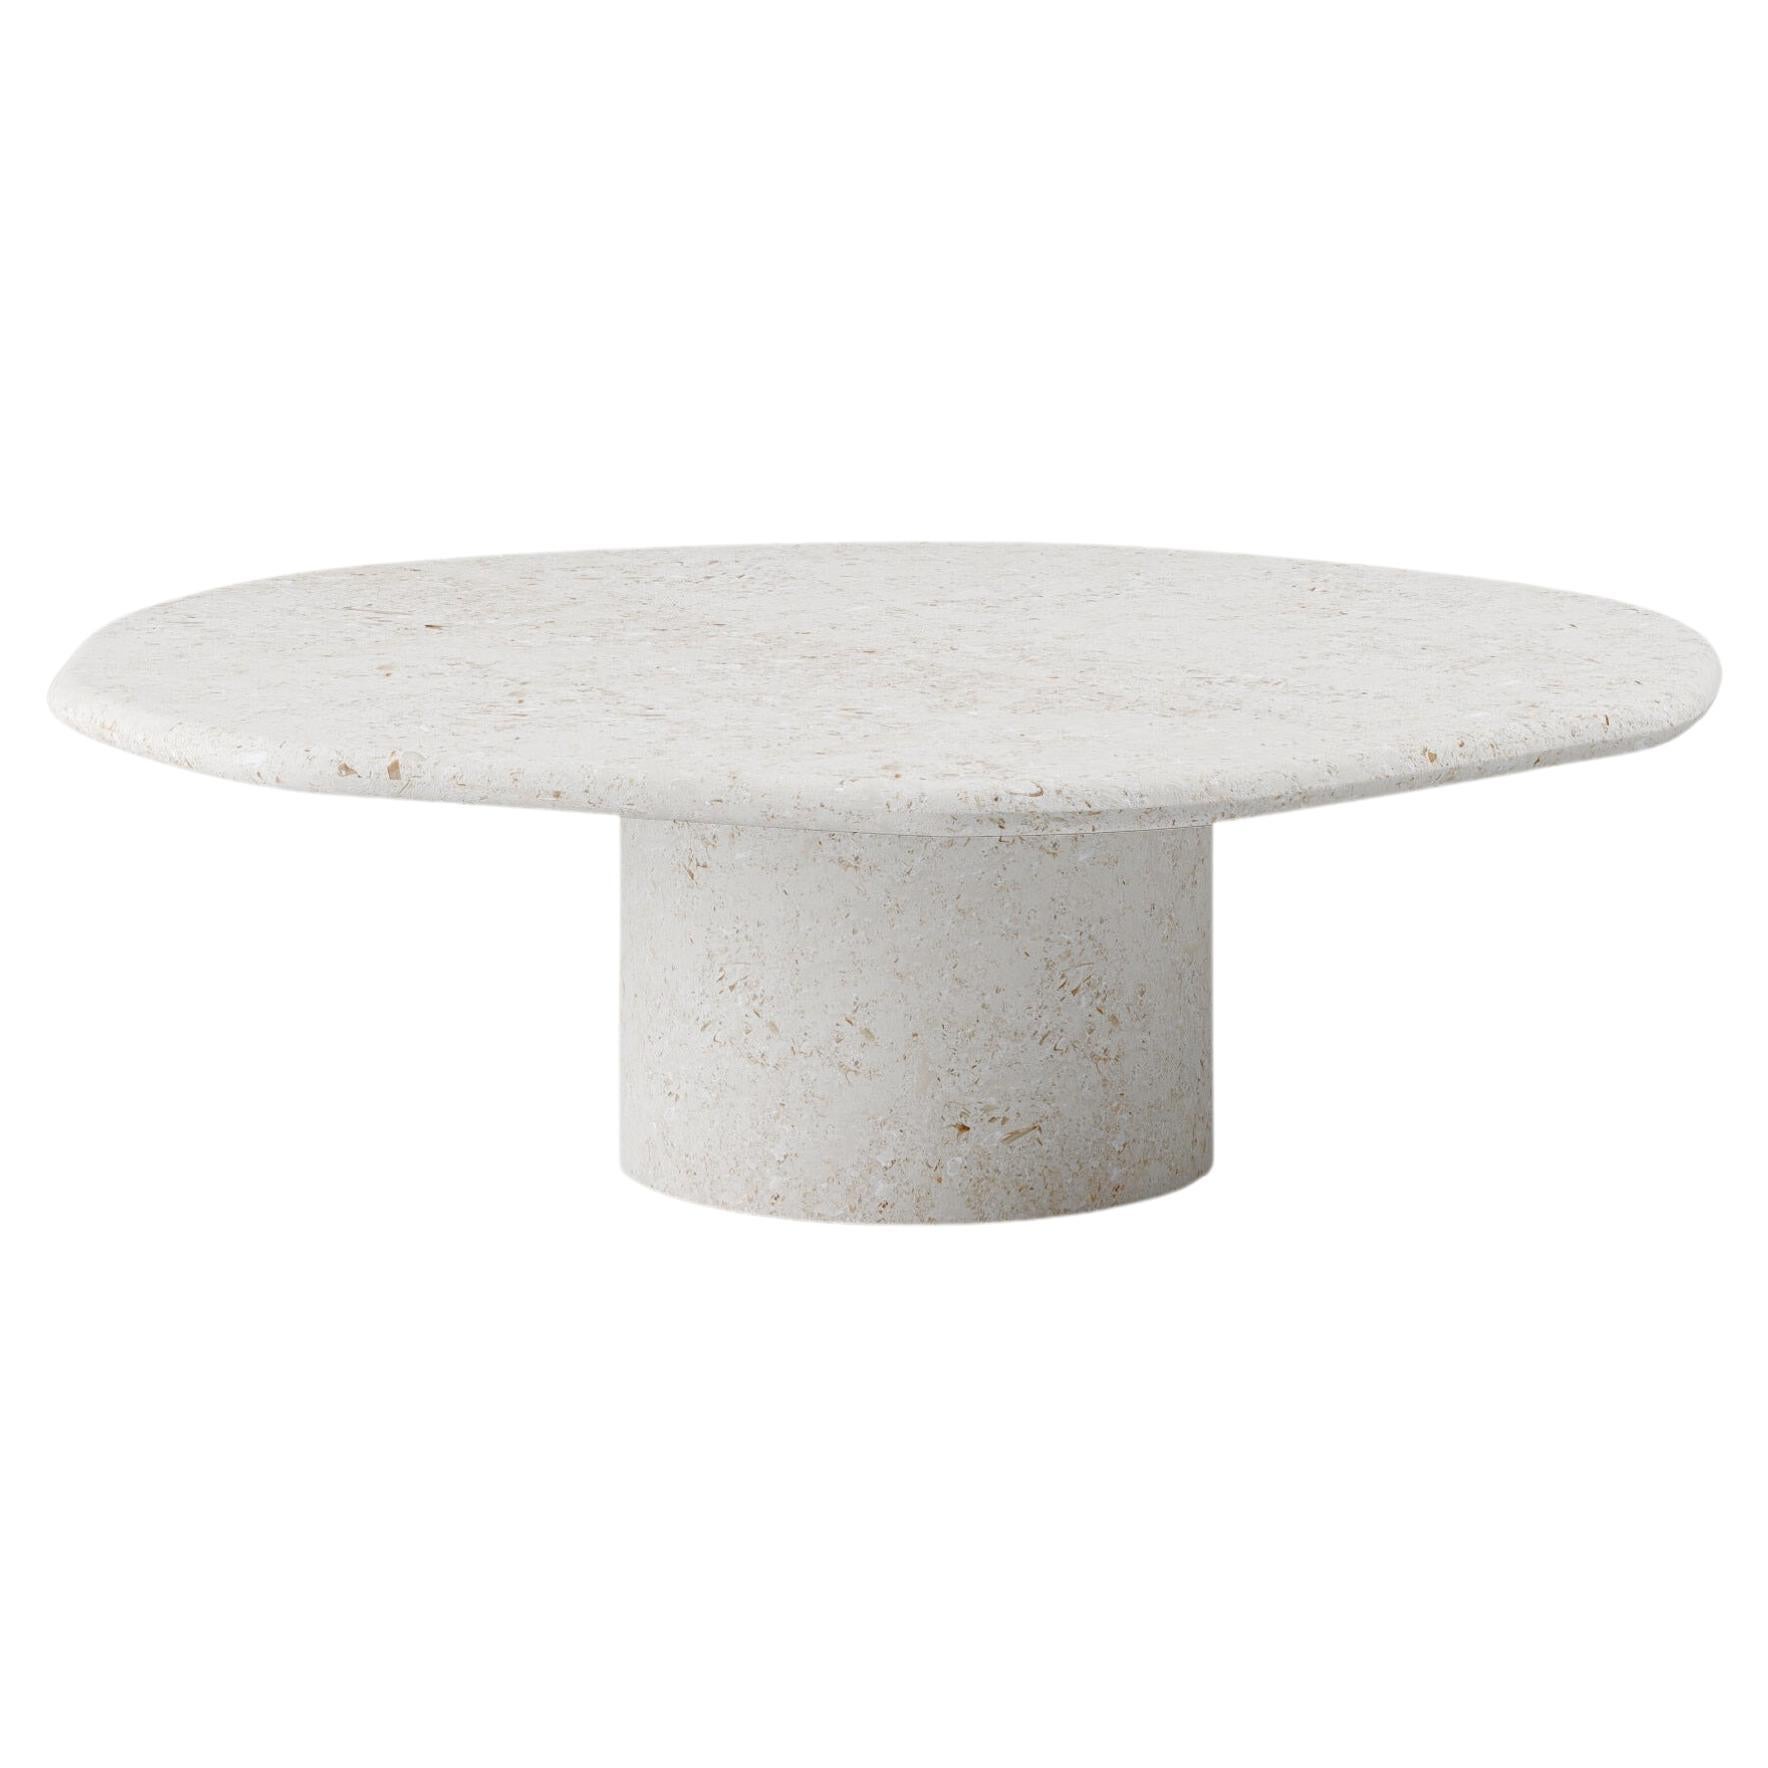 FORM(LA) Lago Round Coffee Table 54”L x 54”W x 14”H Limestone Oceano For Sale